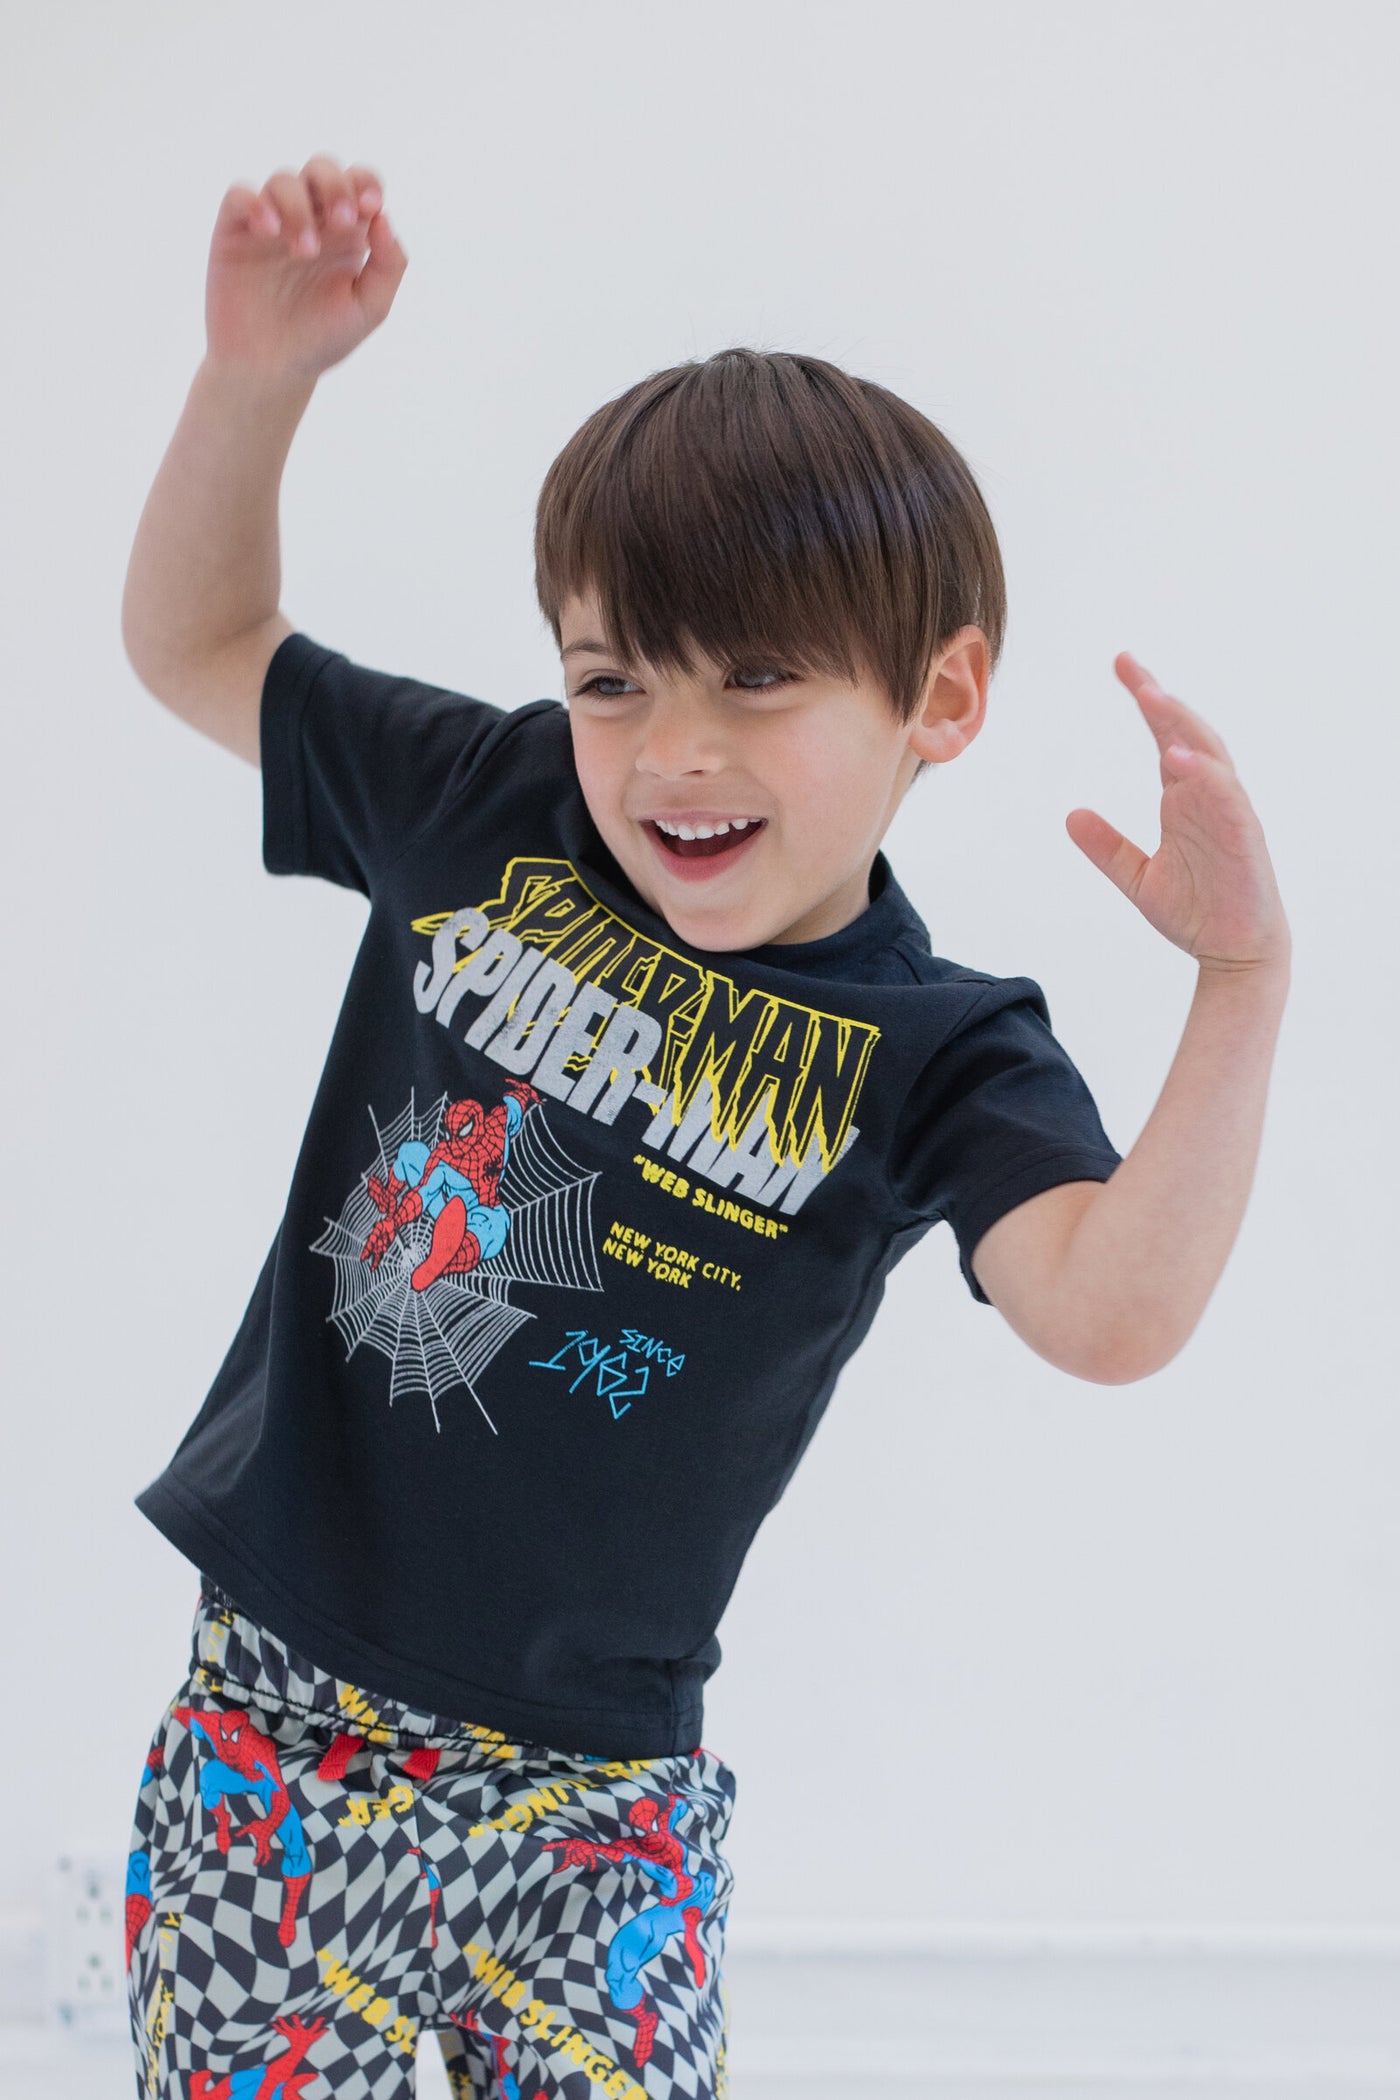 Conjunto de camiseta y pantalones cortos de Spider-Man de Marvel